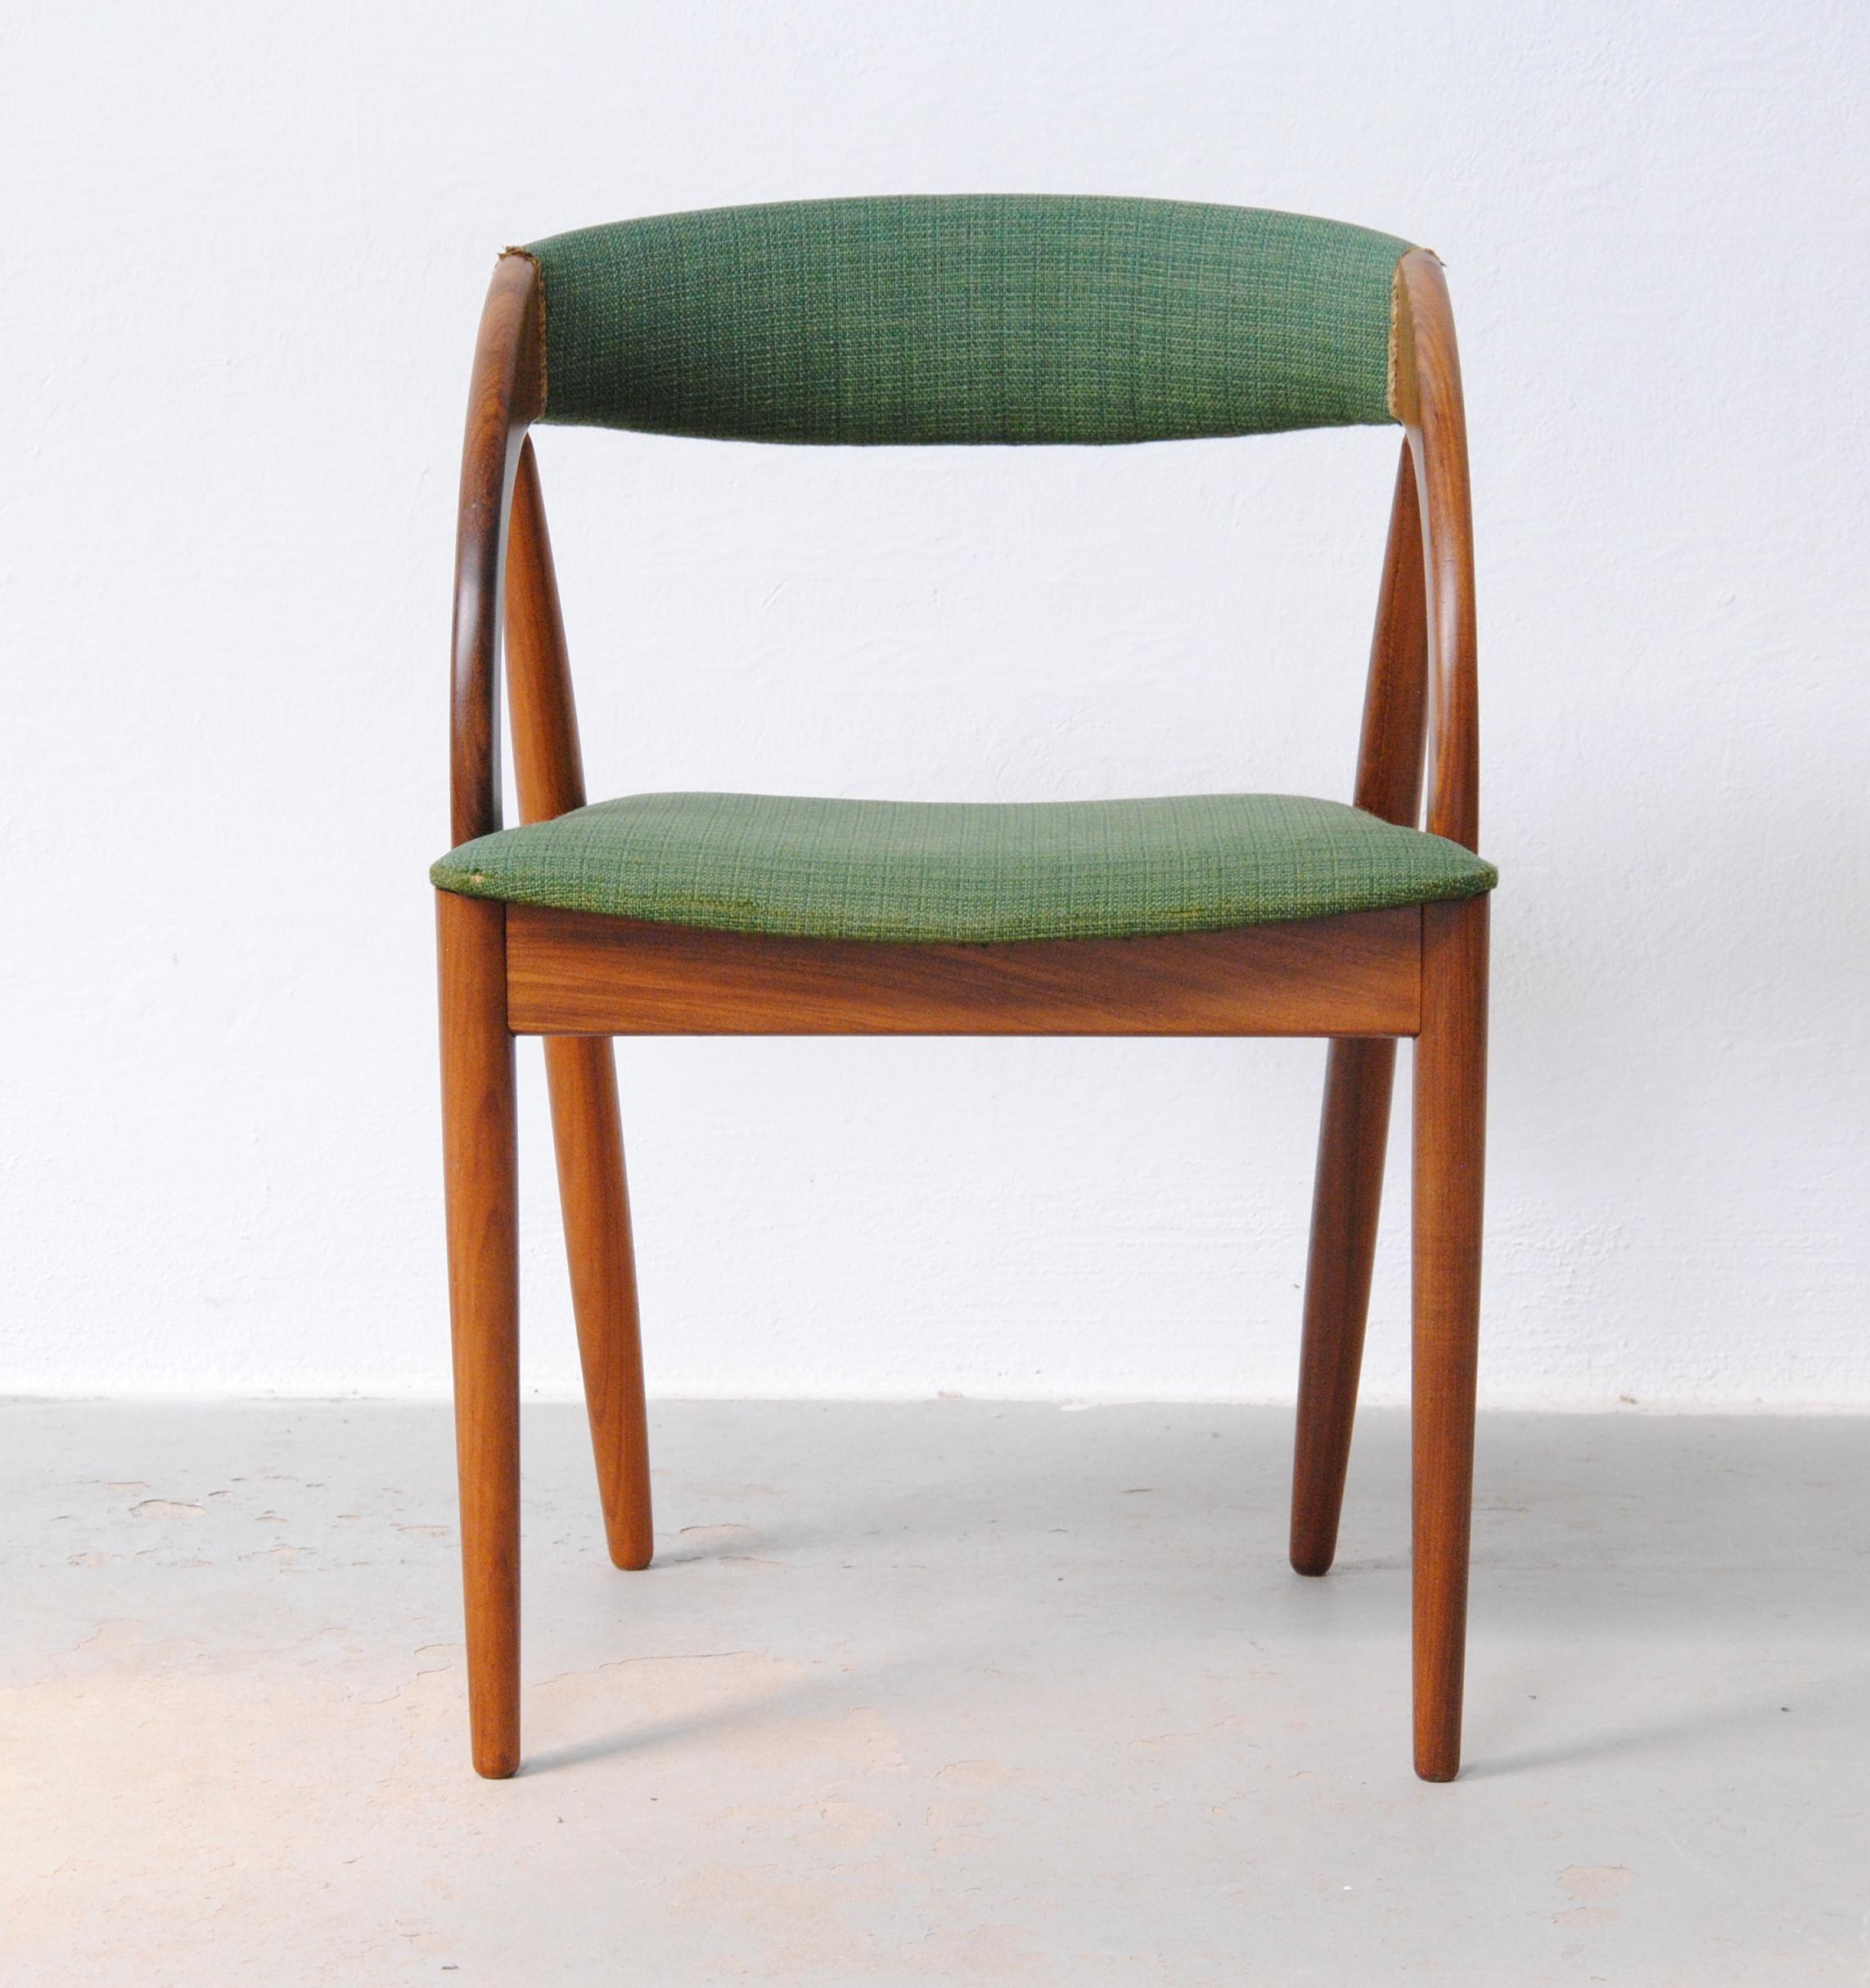 Organisch geformter Beistellstuhl aus Teakholz, entworfen von dem dänischen Designer Johannes Andersen.

Der bequeme Stuhl besteht aus einem soliden, sorgfältig geformten Teakholzrahmen mit vielen organischen Formen, die ineinander übergehen und